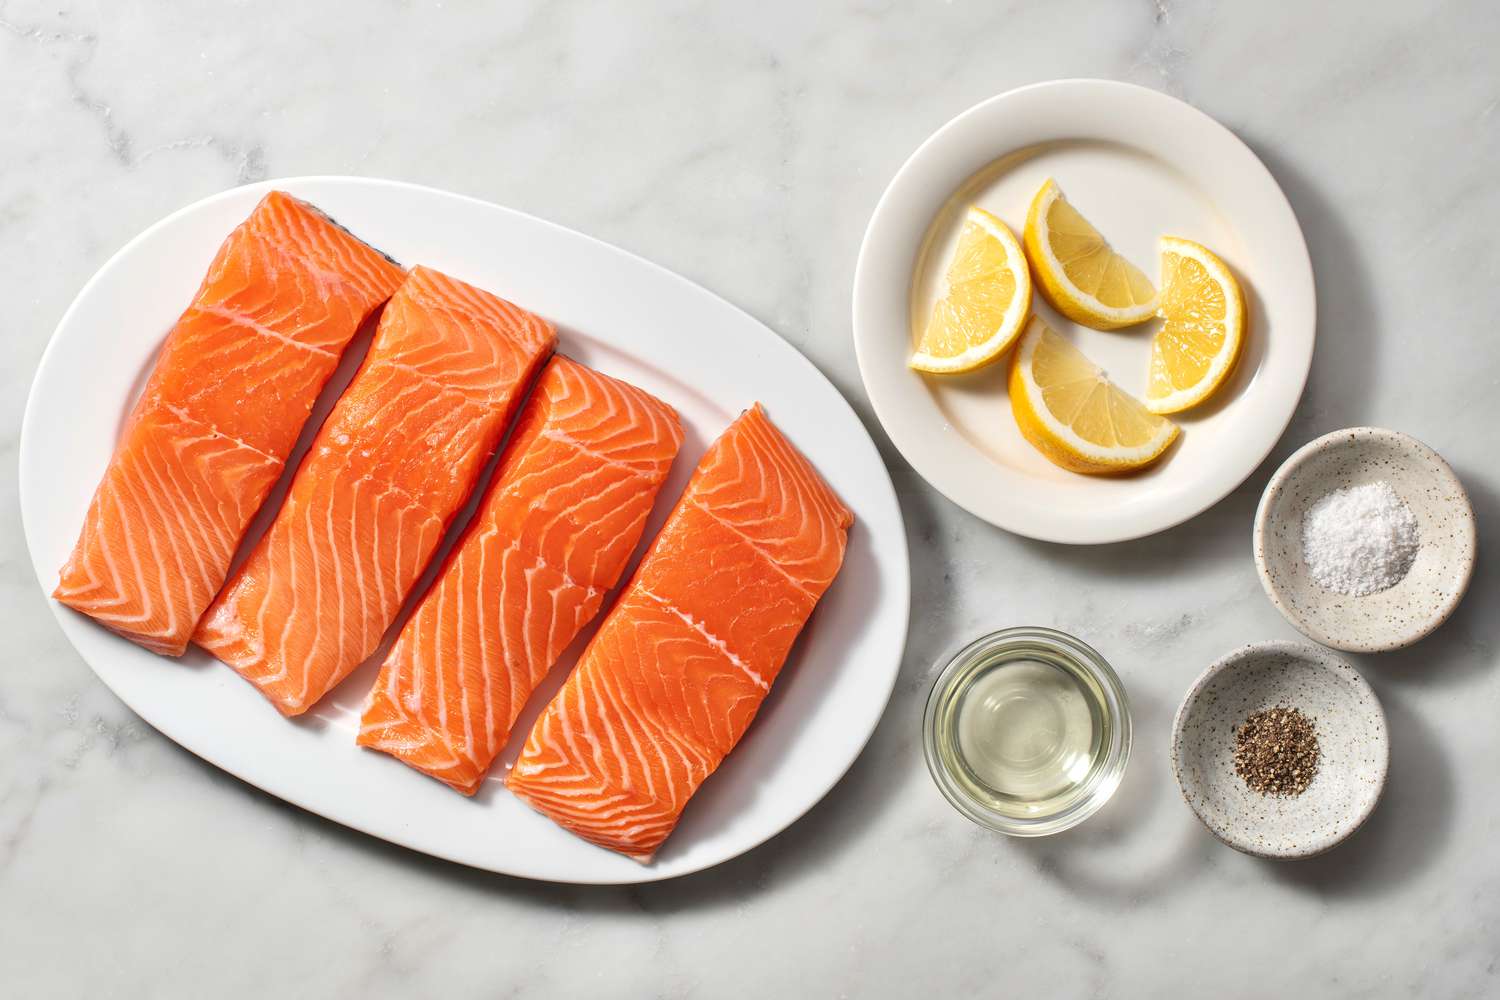 Ingredients to make pan-seared salmon